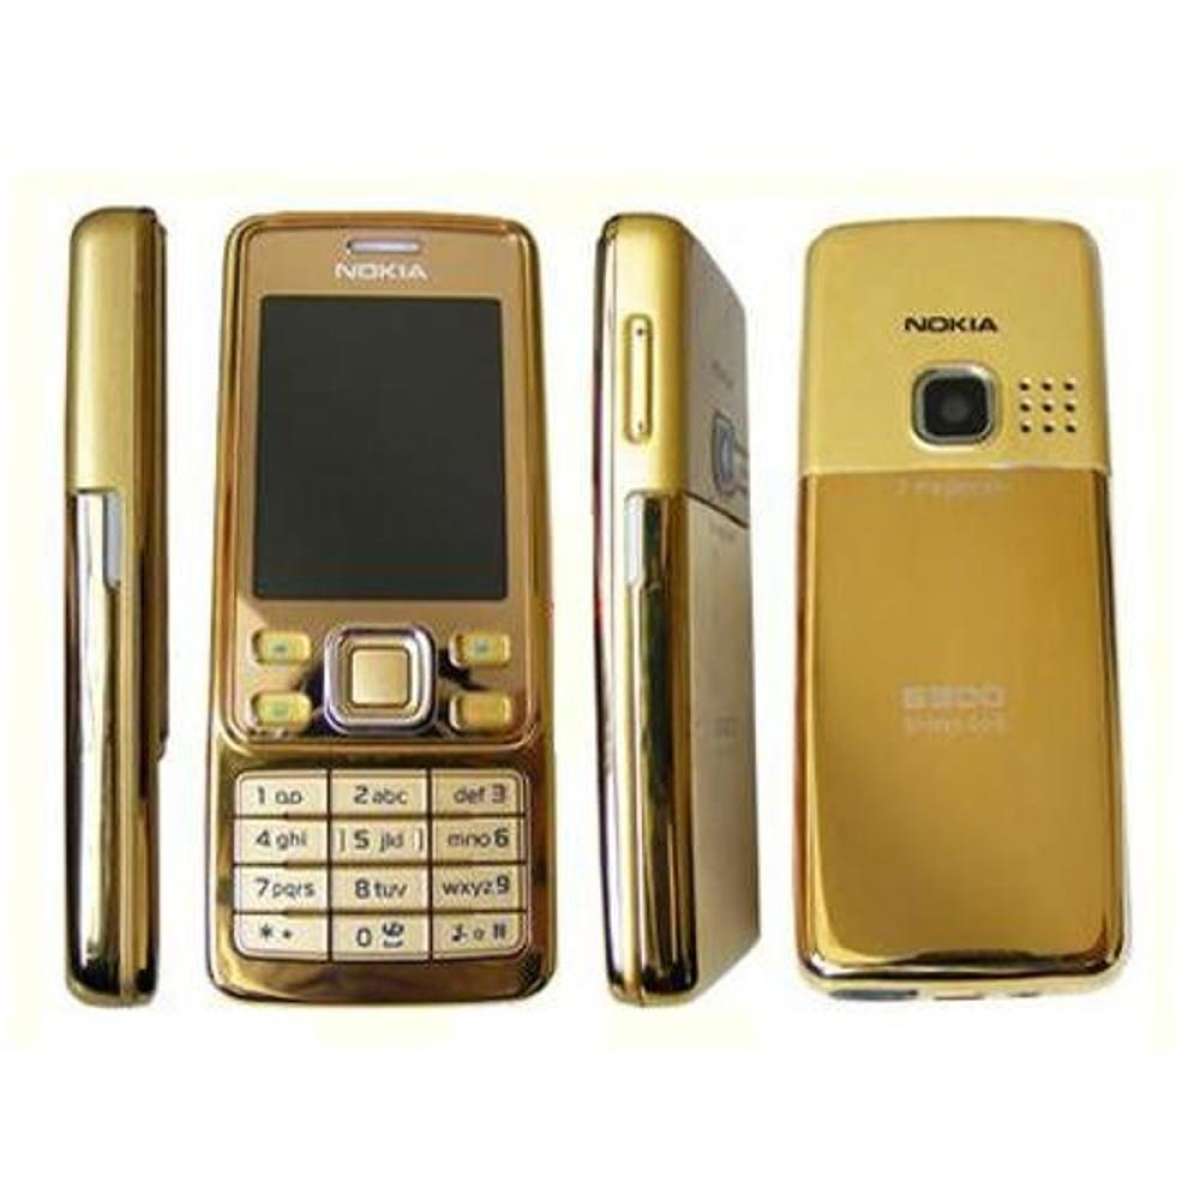 Купить 6700 оригинал. Nokia 6300 Голд. Нокиа 6300 золотой. Nokia 6300 Classic. Нокиа 6300 Классик.